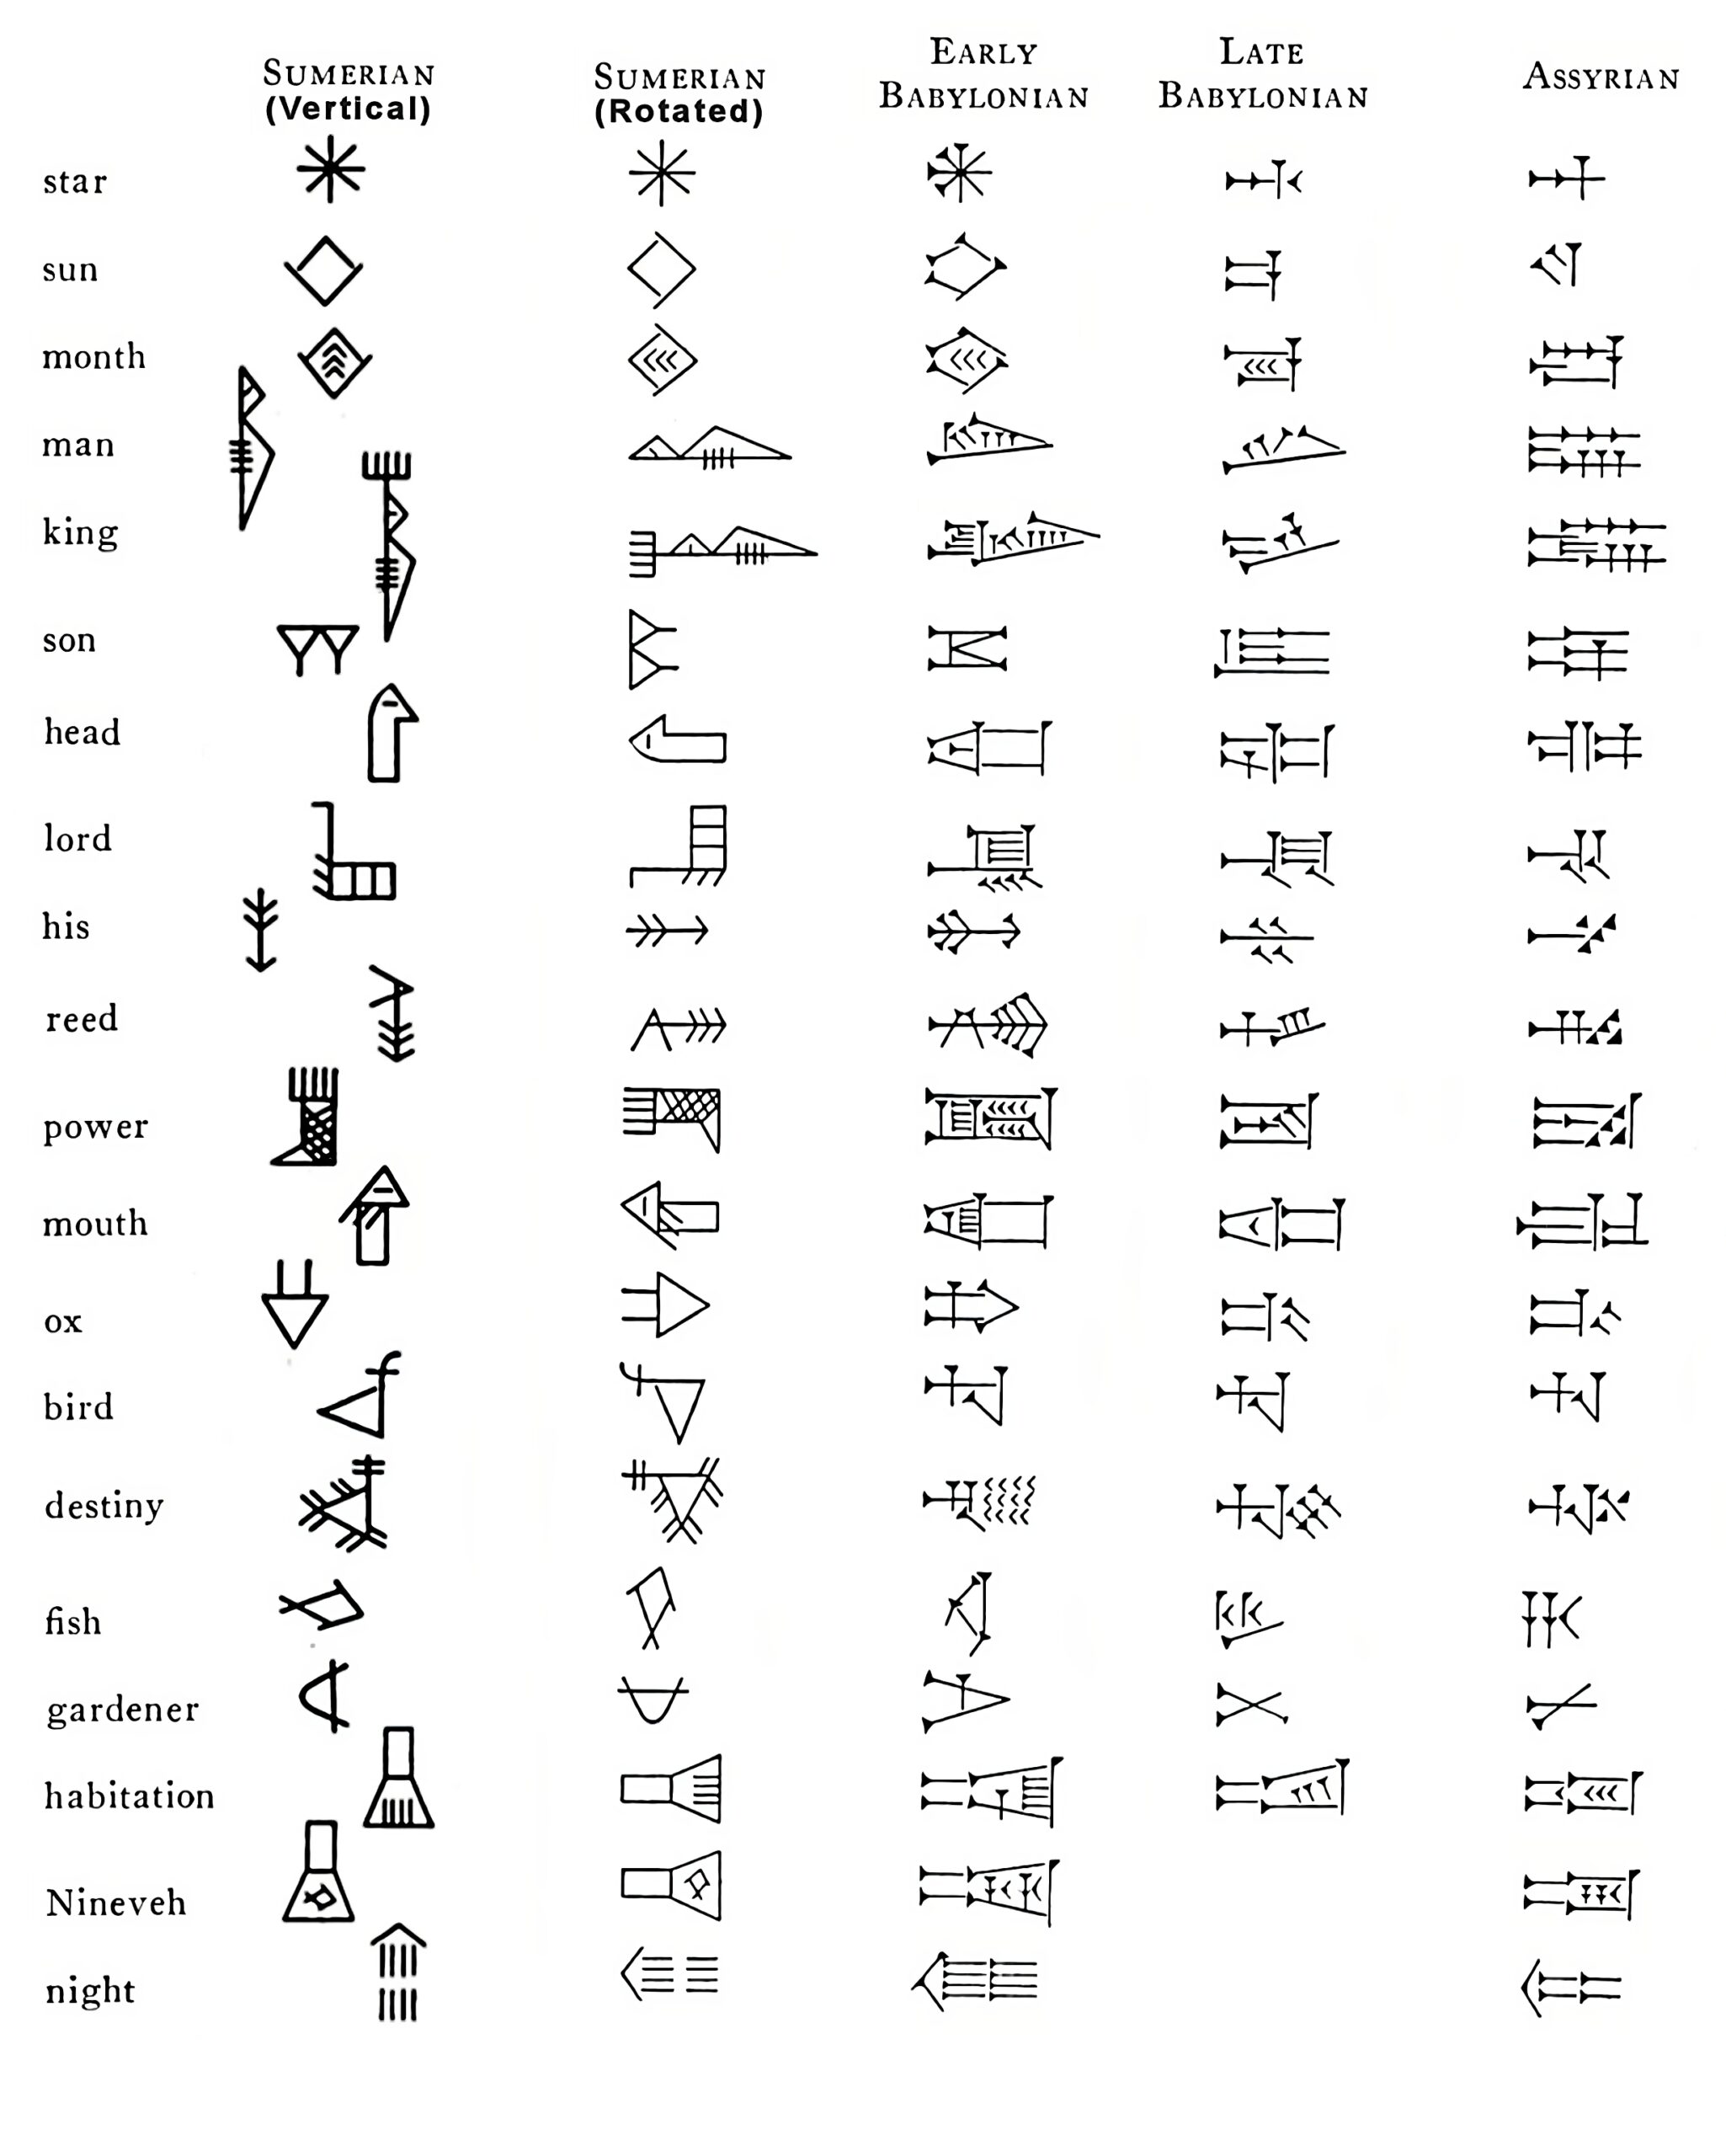 ¿Es cierto que "todas las escrituras fueron primero pictográficas antes de convertirse en solo fonográficas"?